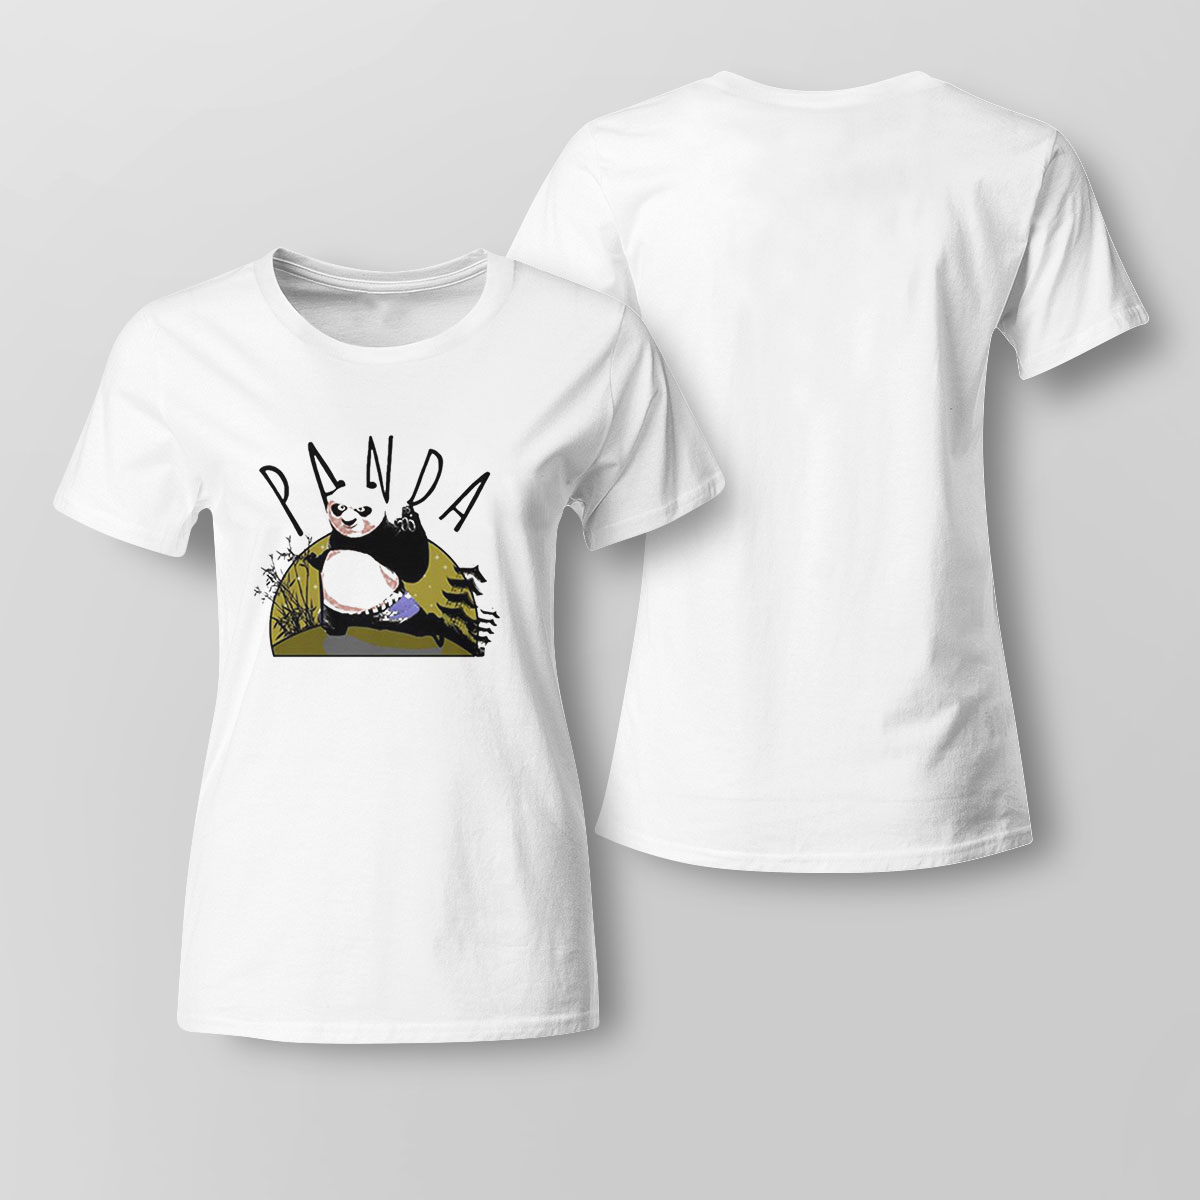 Kung Fu Panda Fighting Mode On Shirt Ladies T-shirt